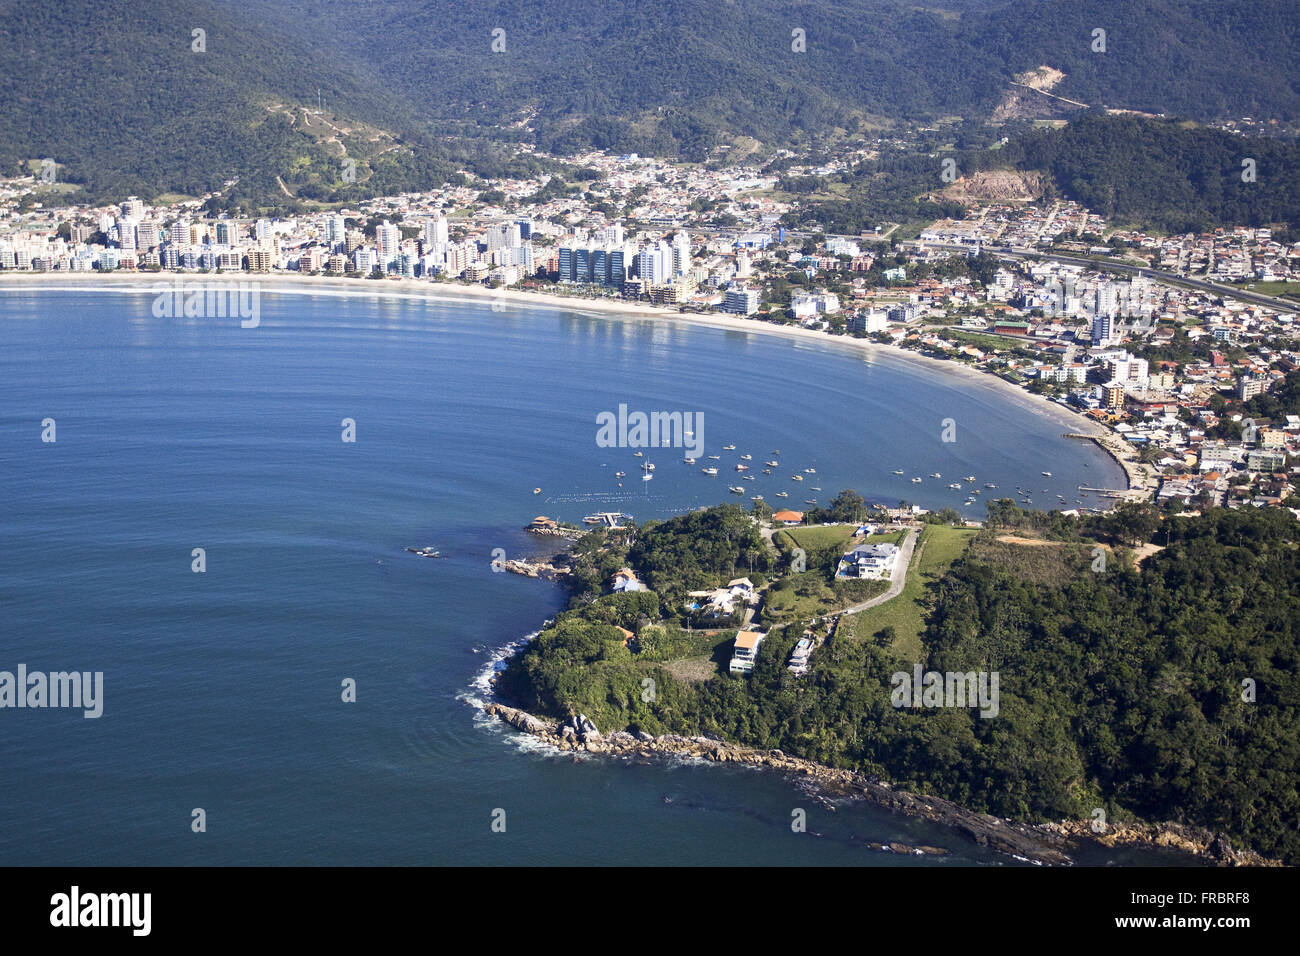 Aerial view of the city in Santa Catarina coast - Vale do Itajai Stock Photo